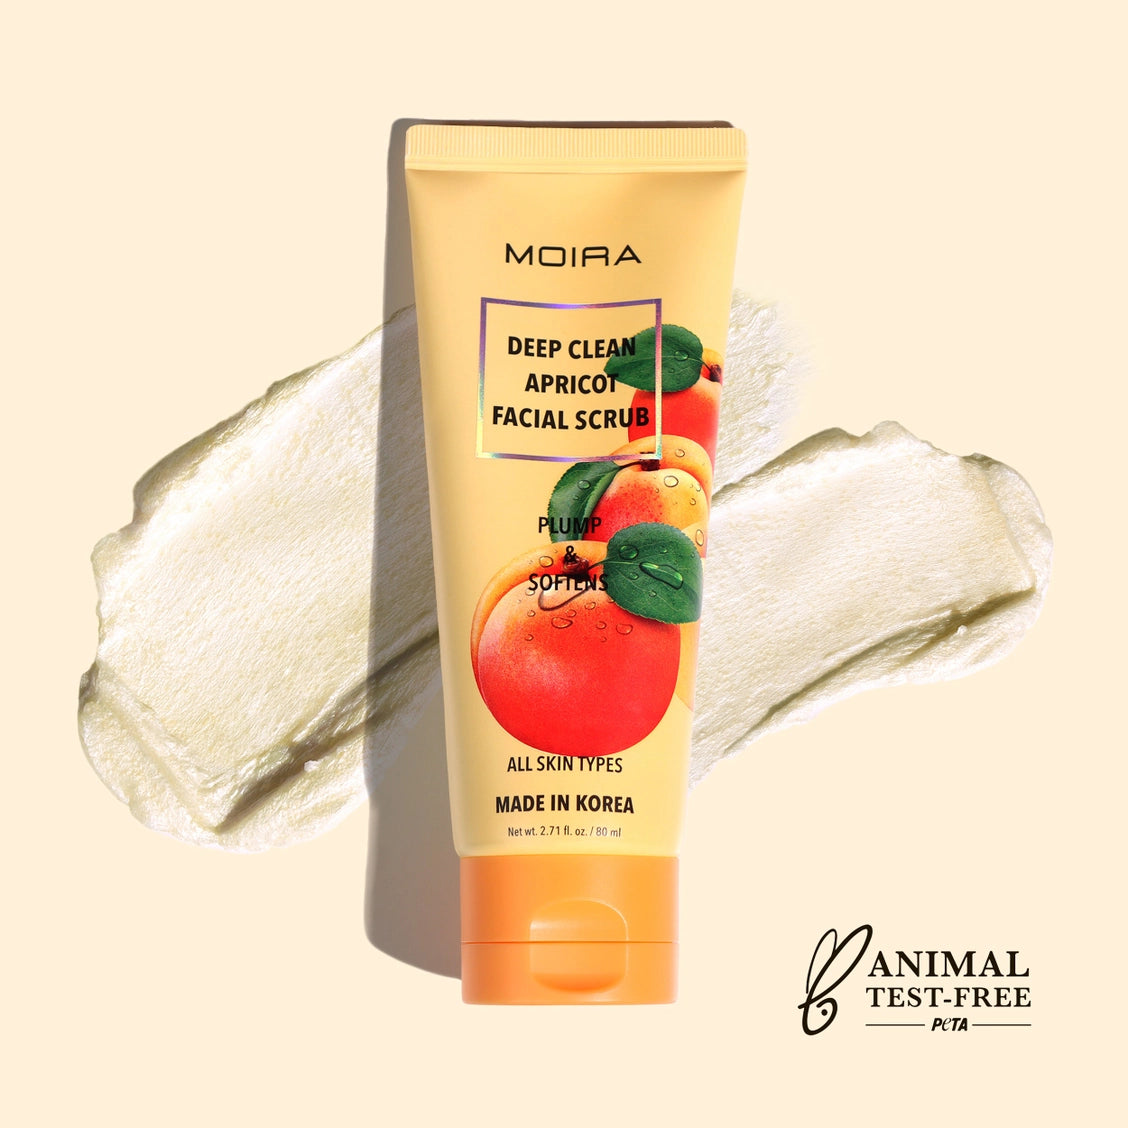 Moira Deep Clean Apricot Facial Scrub